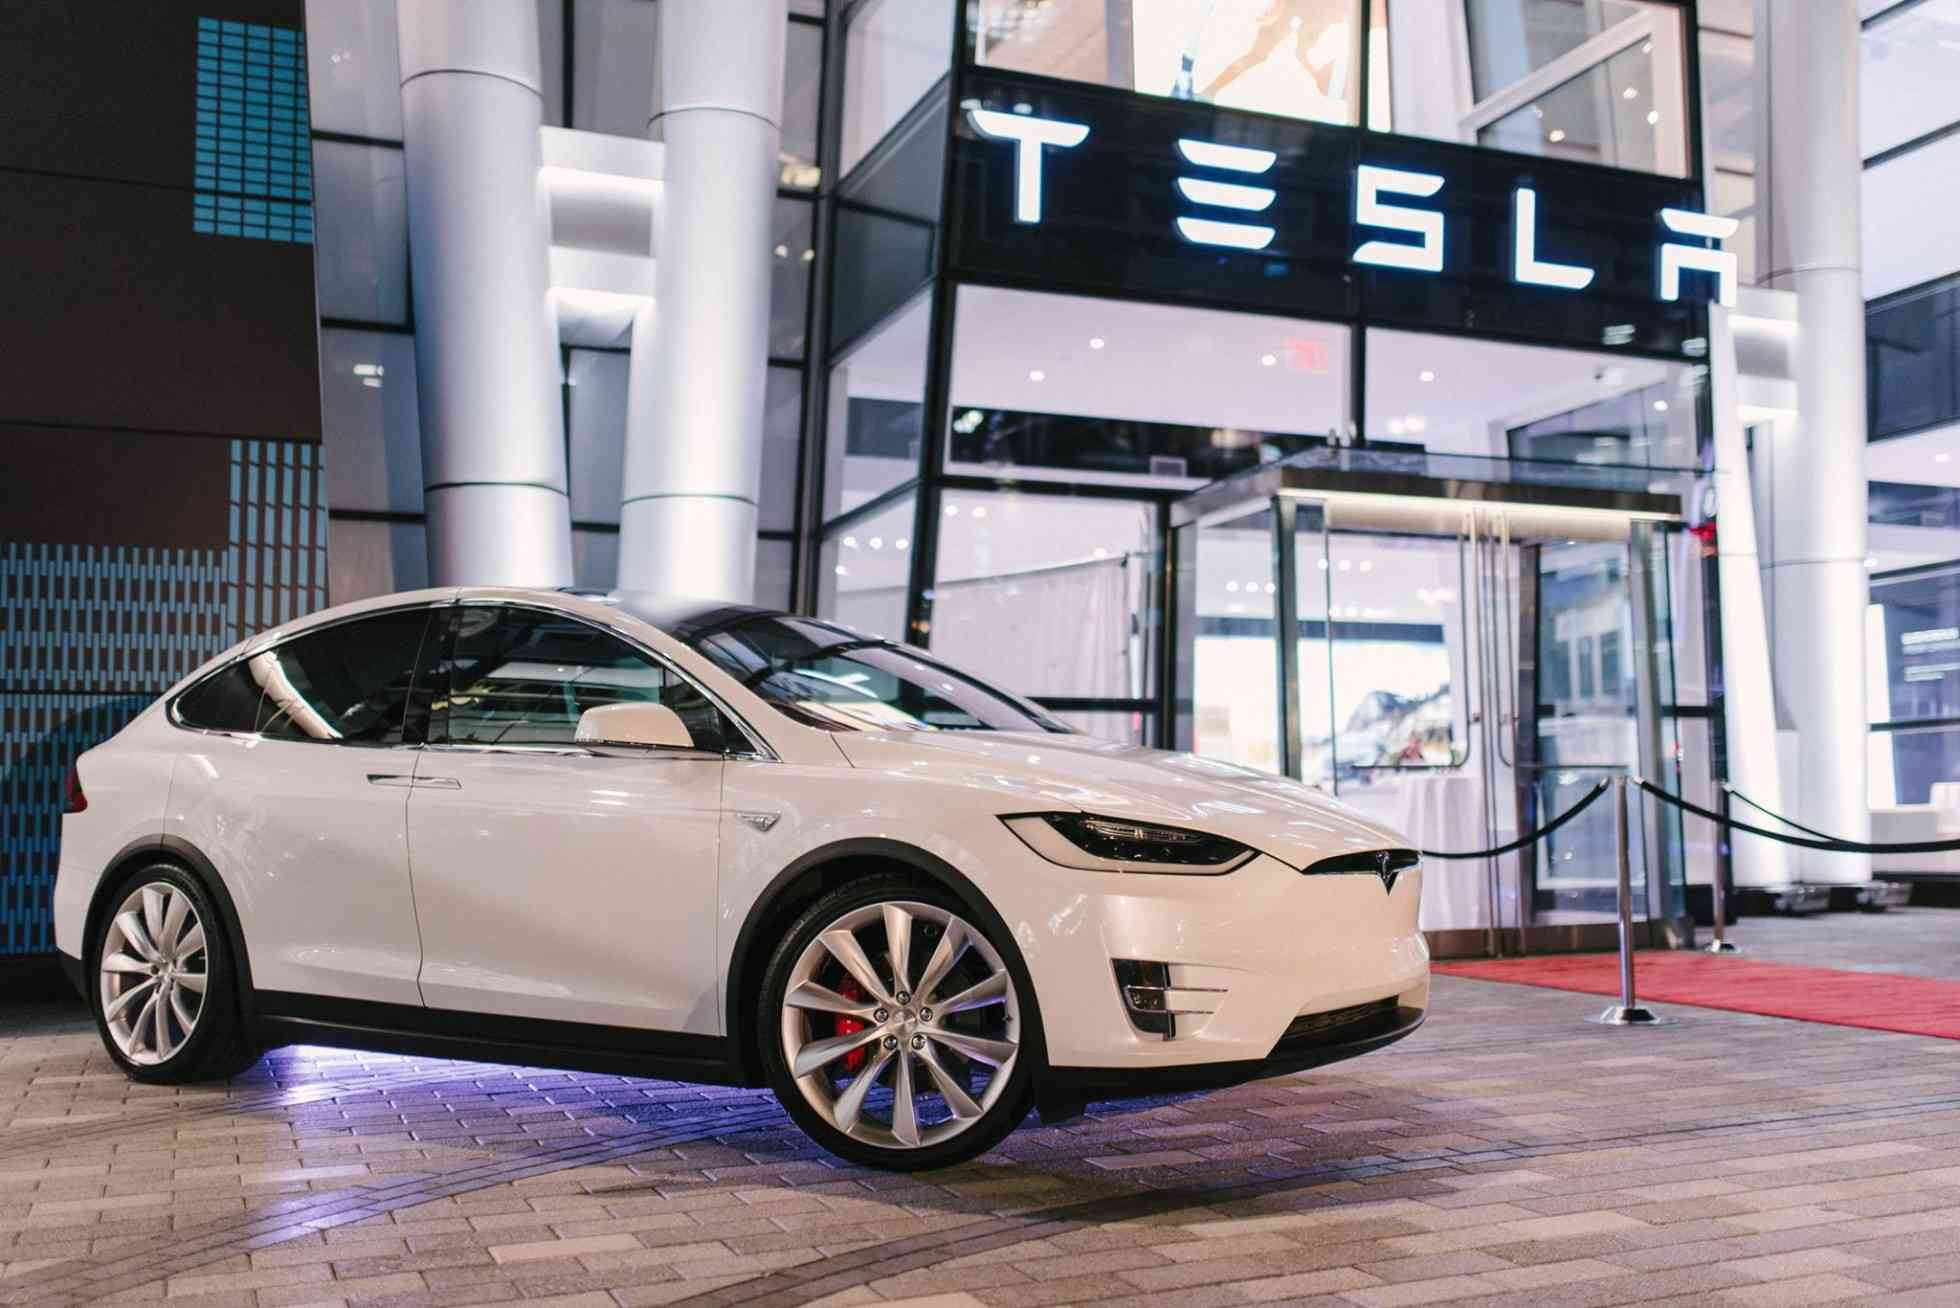 Автомобиль Tesla попал в аварию, находясь под управлением автопилота